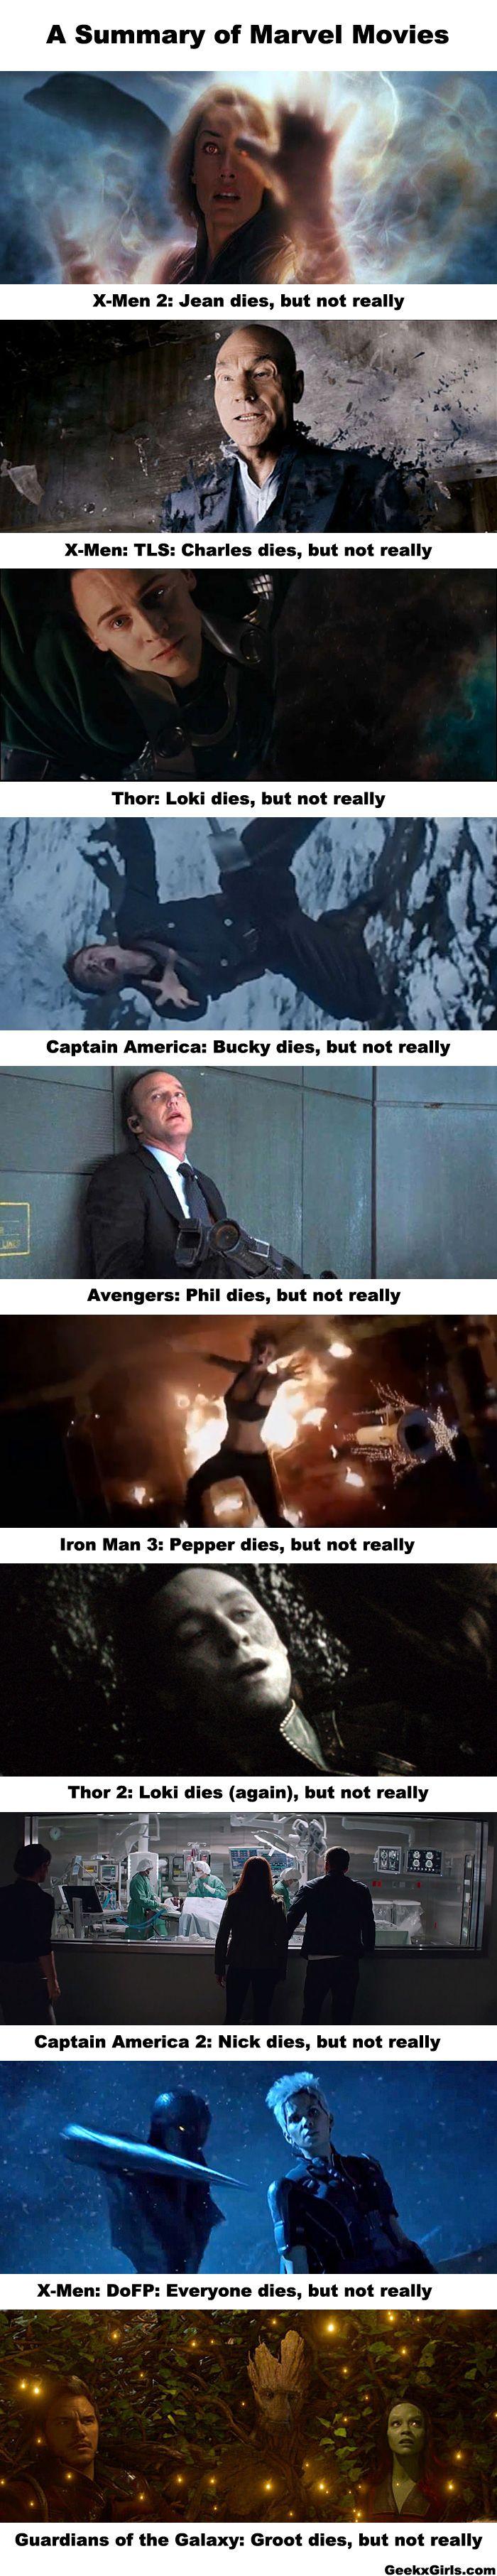 En fait, personne ne meurt jamais vraiment dans les films Marvel